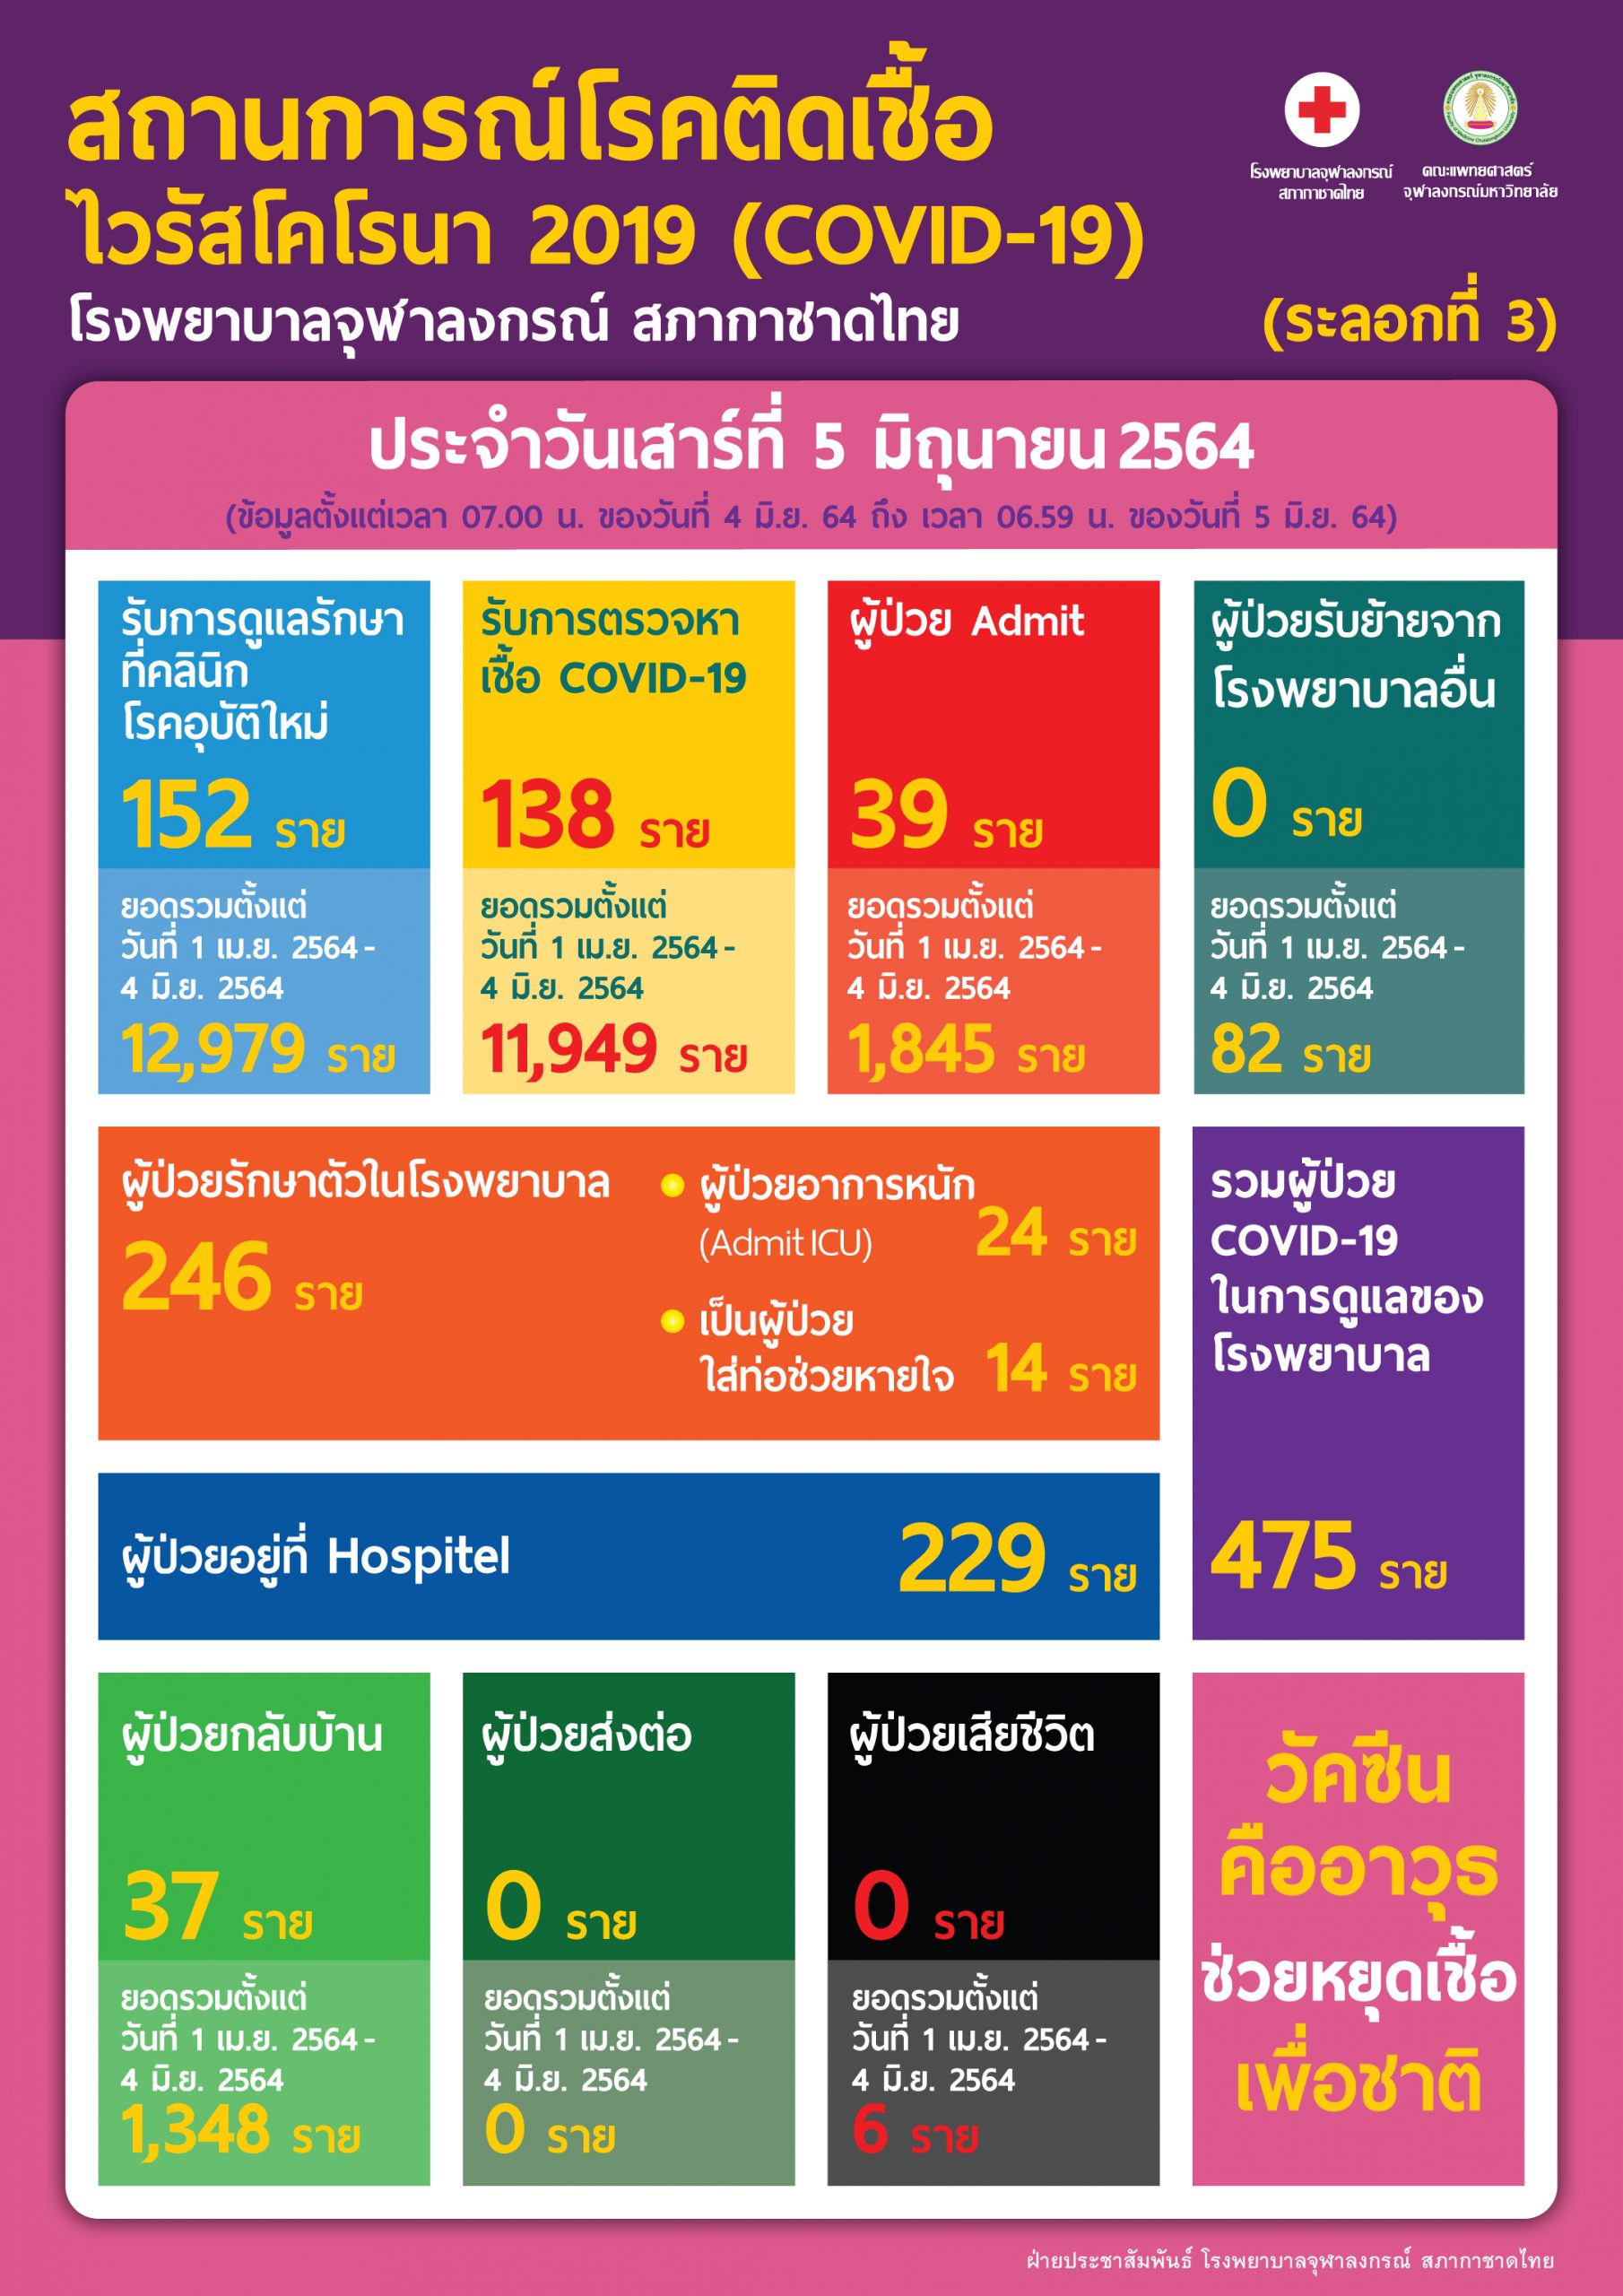 สถานการณ์โรคติดเชื้อไวรัสโคโรนา 2019 (COVID-19)  (ระลอกที่ 3) โรงพยาบาลจุฬาลงกรณ์ สภากาชาดไทย ประจำวันเสาร์ที่ 5 มิถุนายน 2564